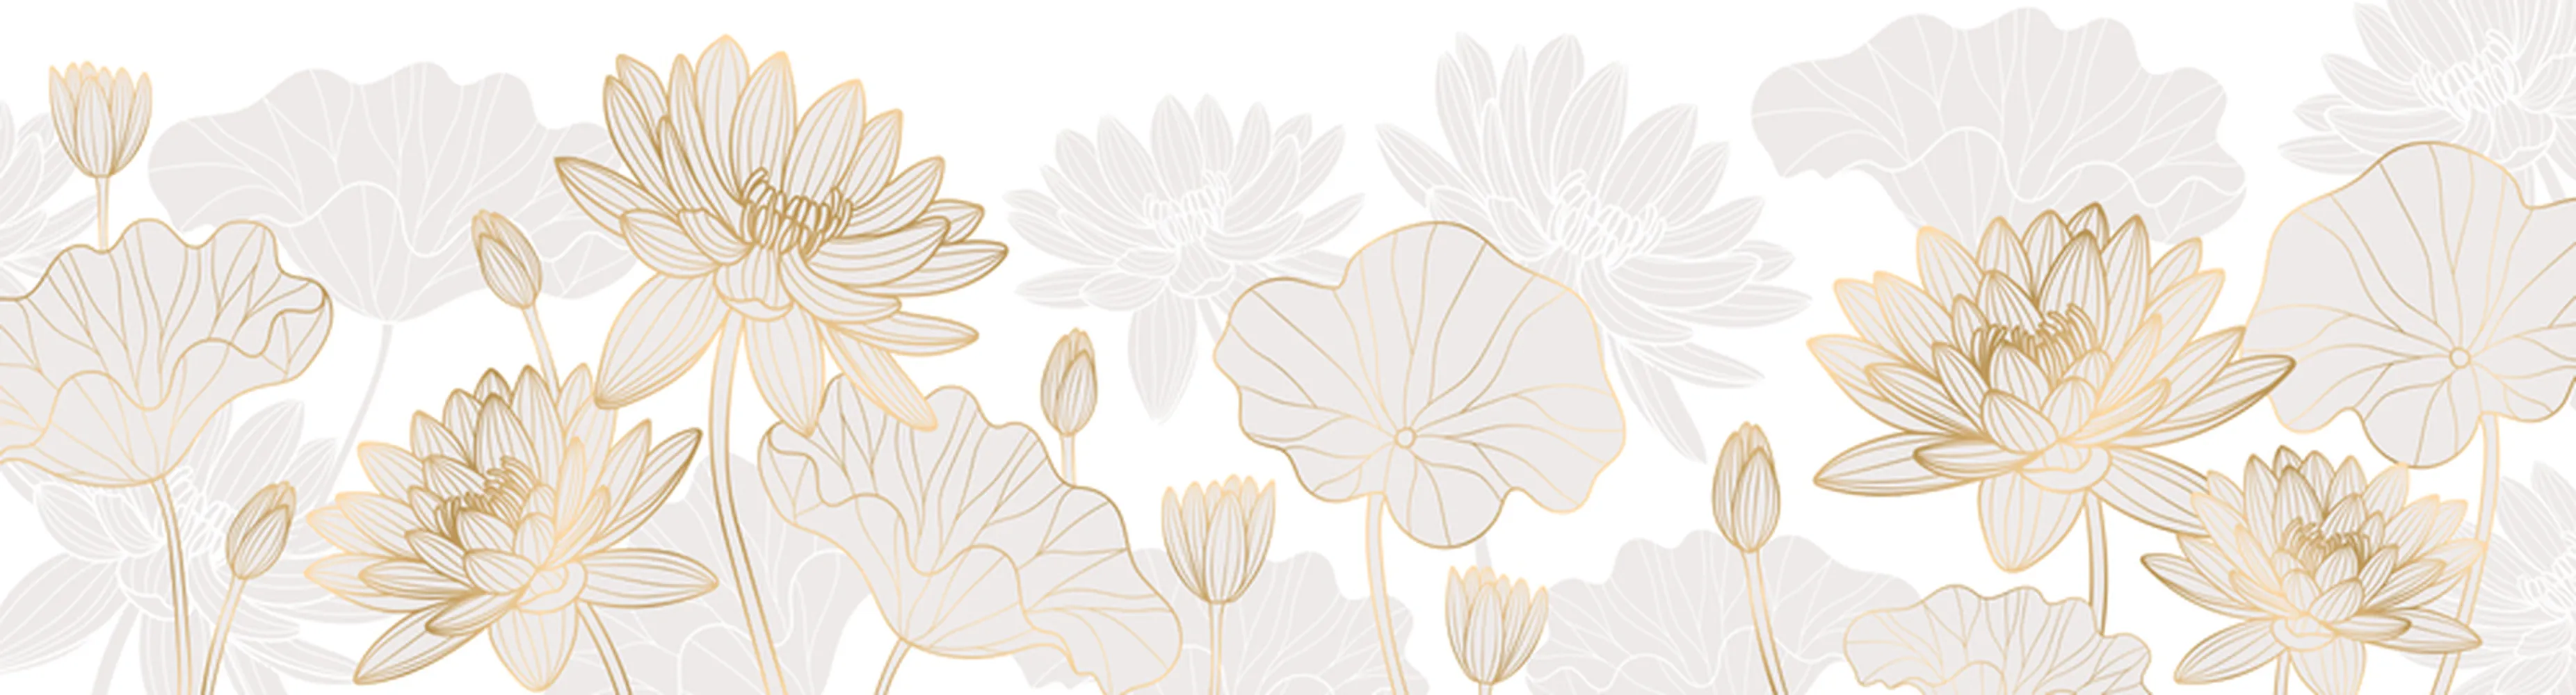 پوستر لوکس طرح گلهای نیلوفر با خطوط طلایی